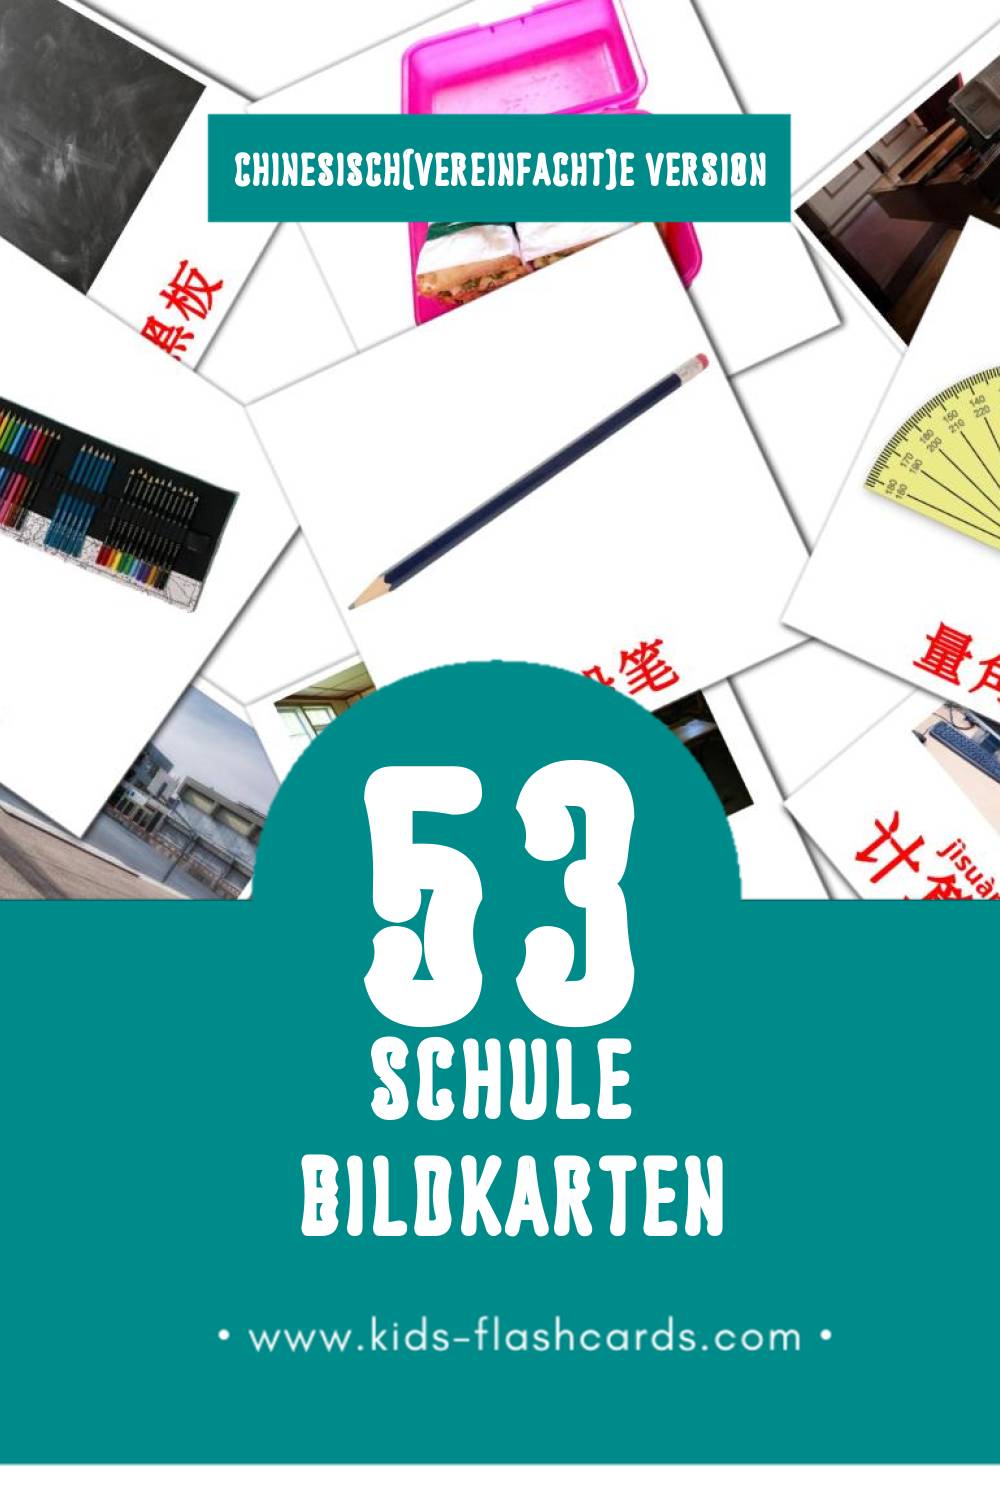 Visual 学校 Flashcards für Kleinkinder (53 Karten in Chinesisch(Vereinfacht))